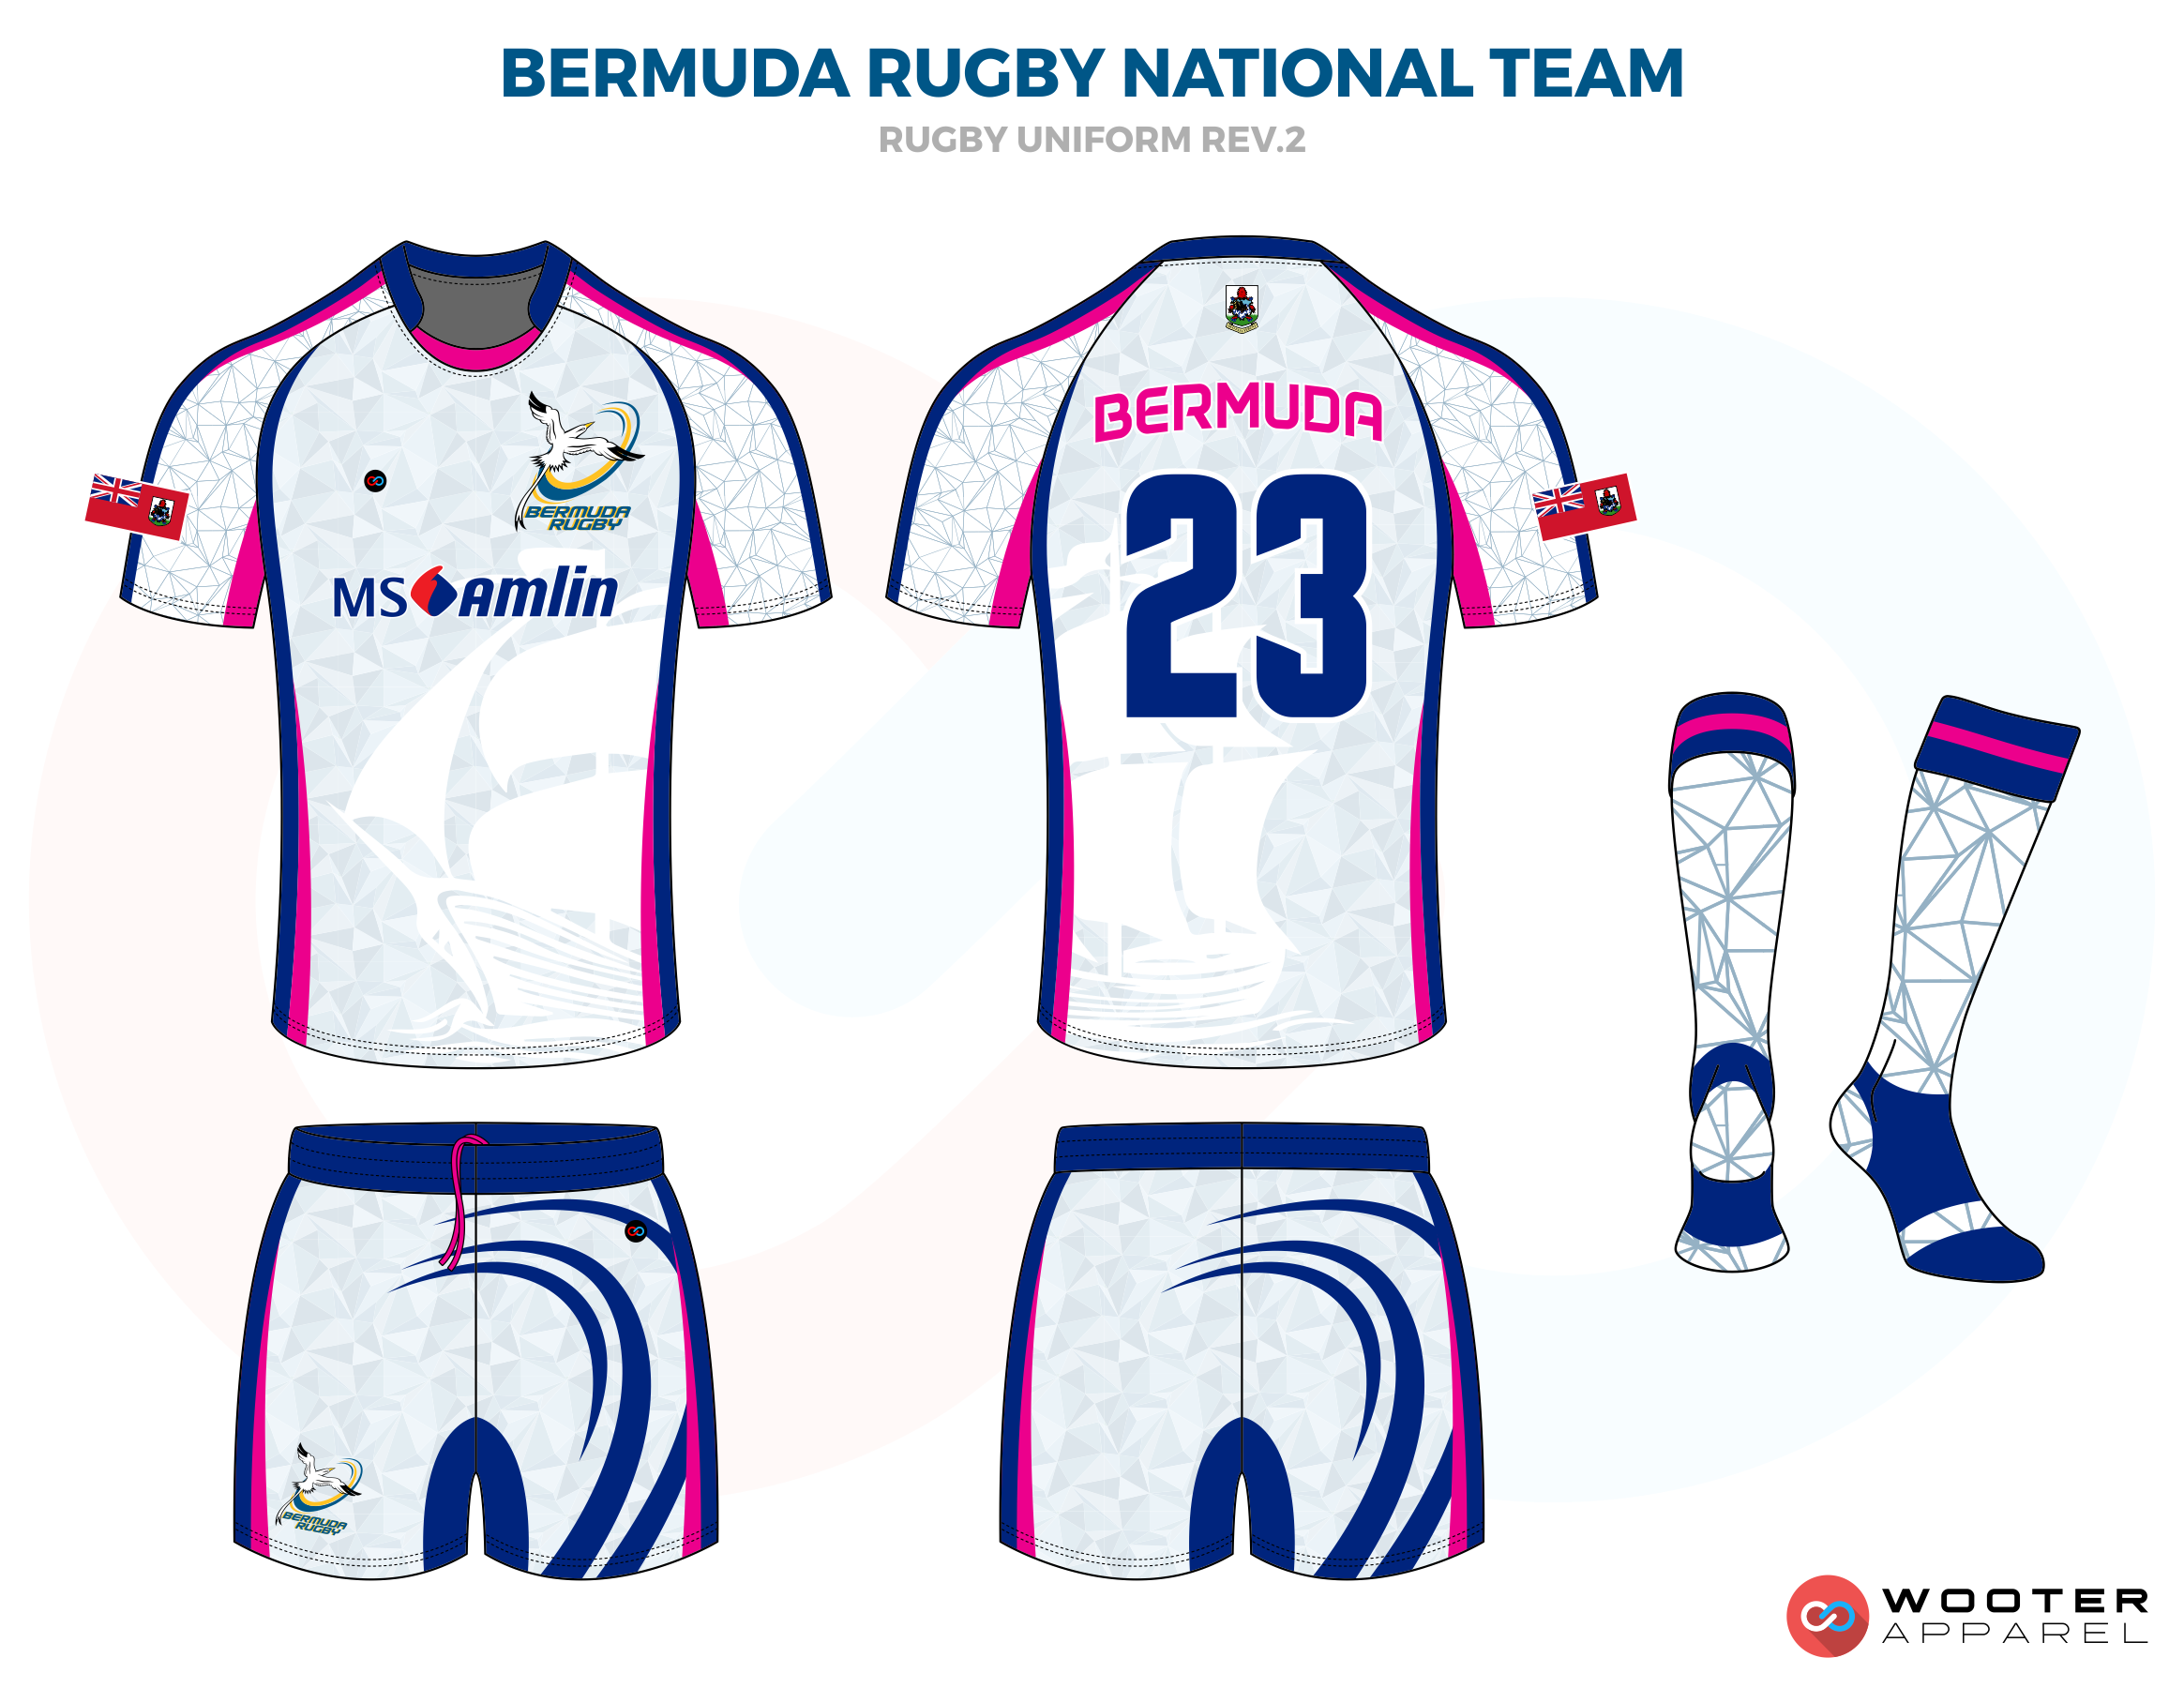 02_Bermuda Rugby National Team_revised.png